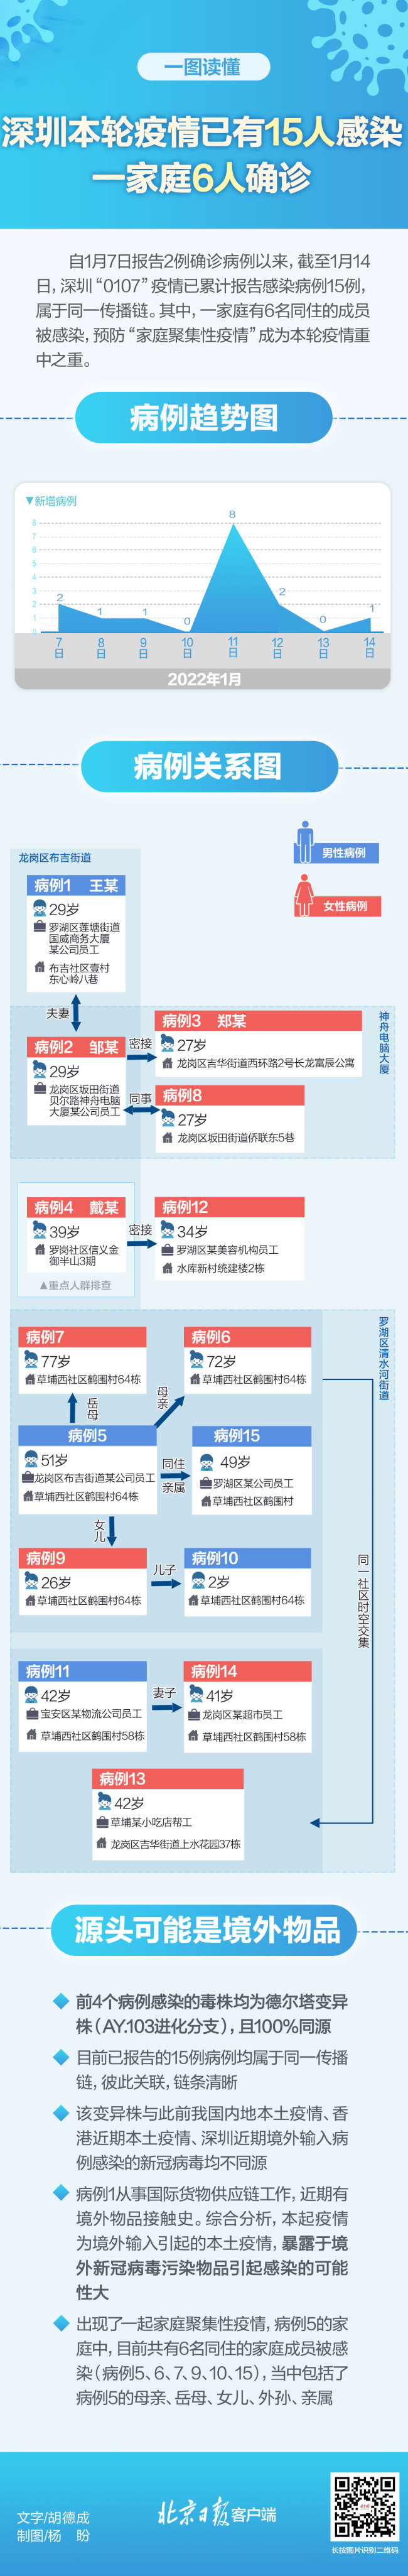 一图读懂|深圳本轮疫情已有15人感染 一家6人确诊